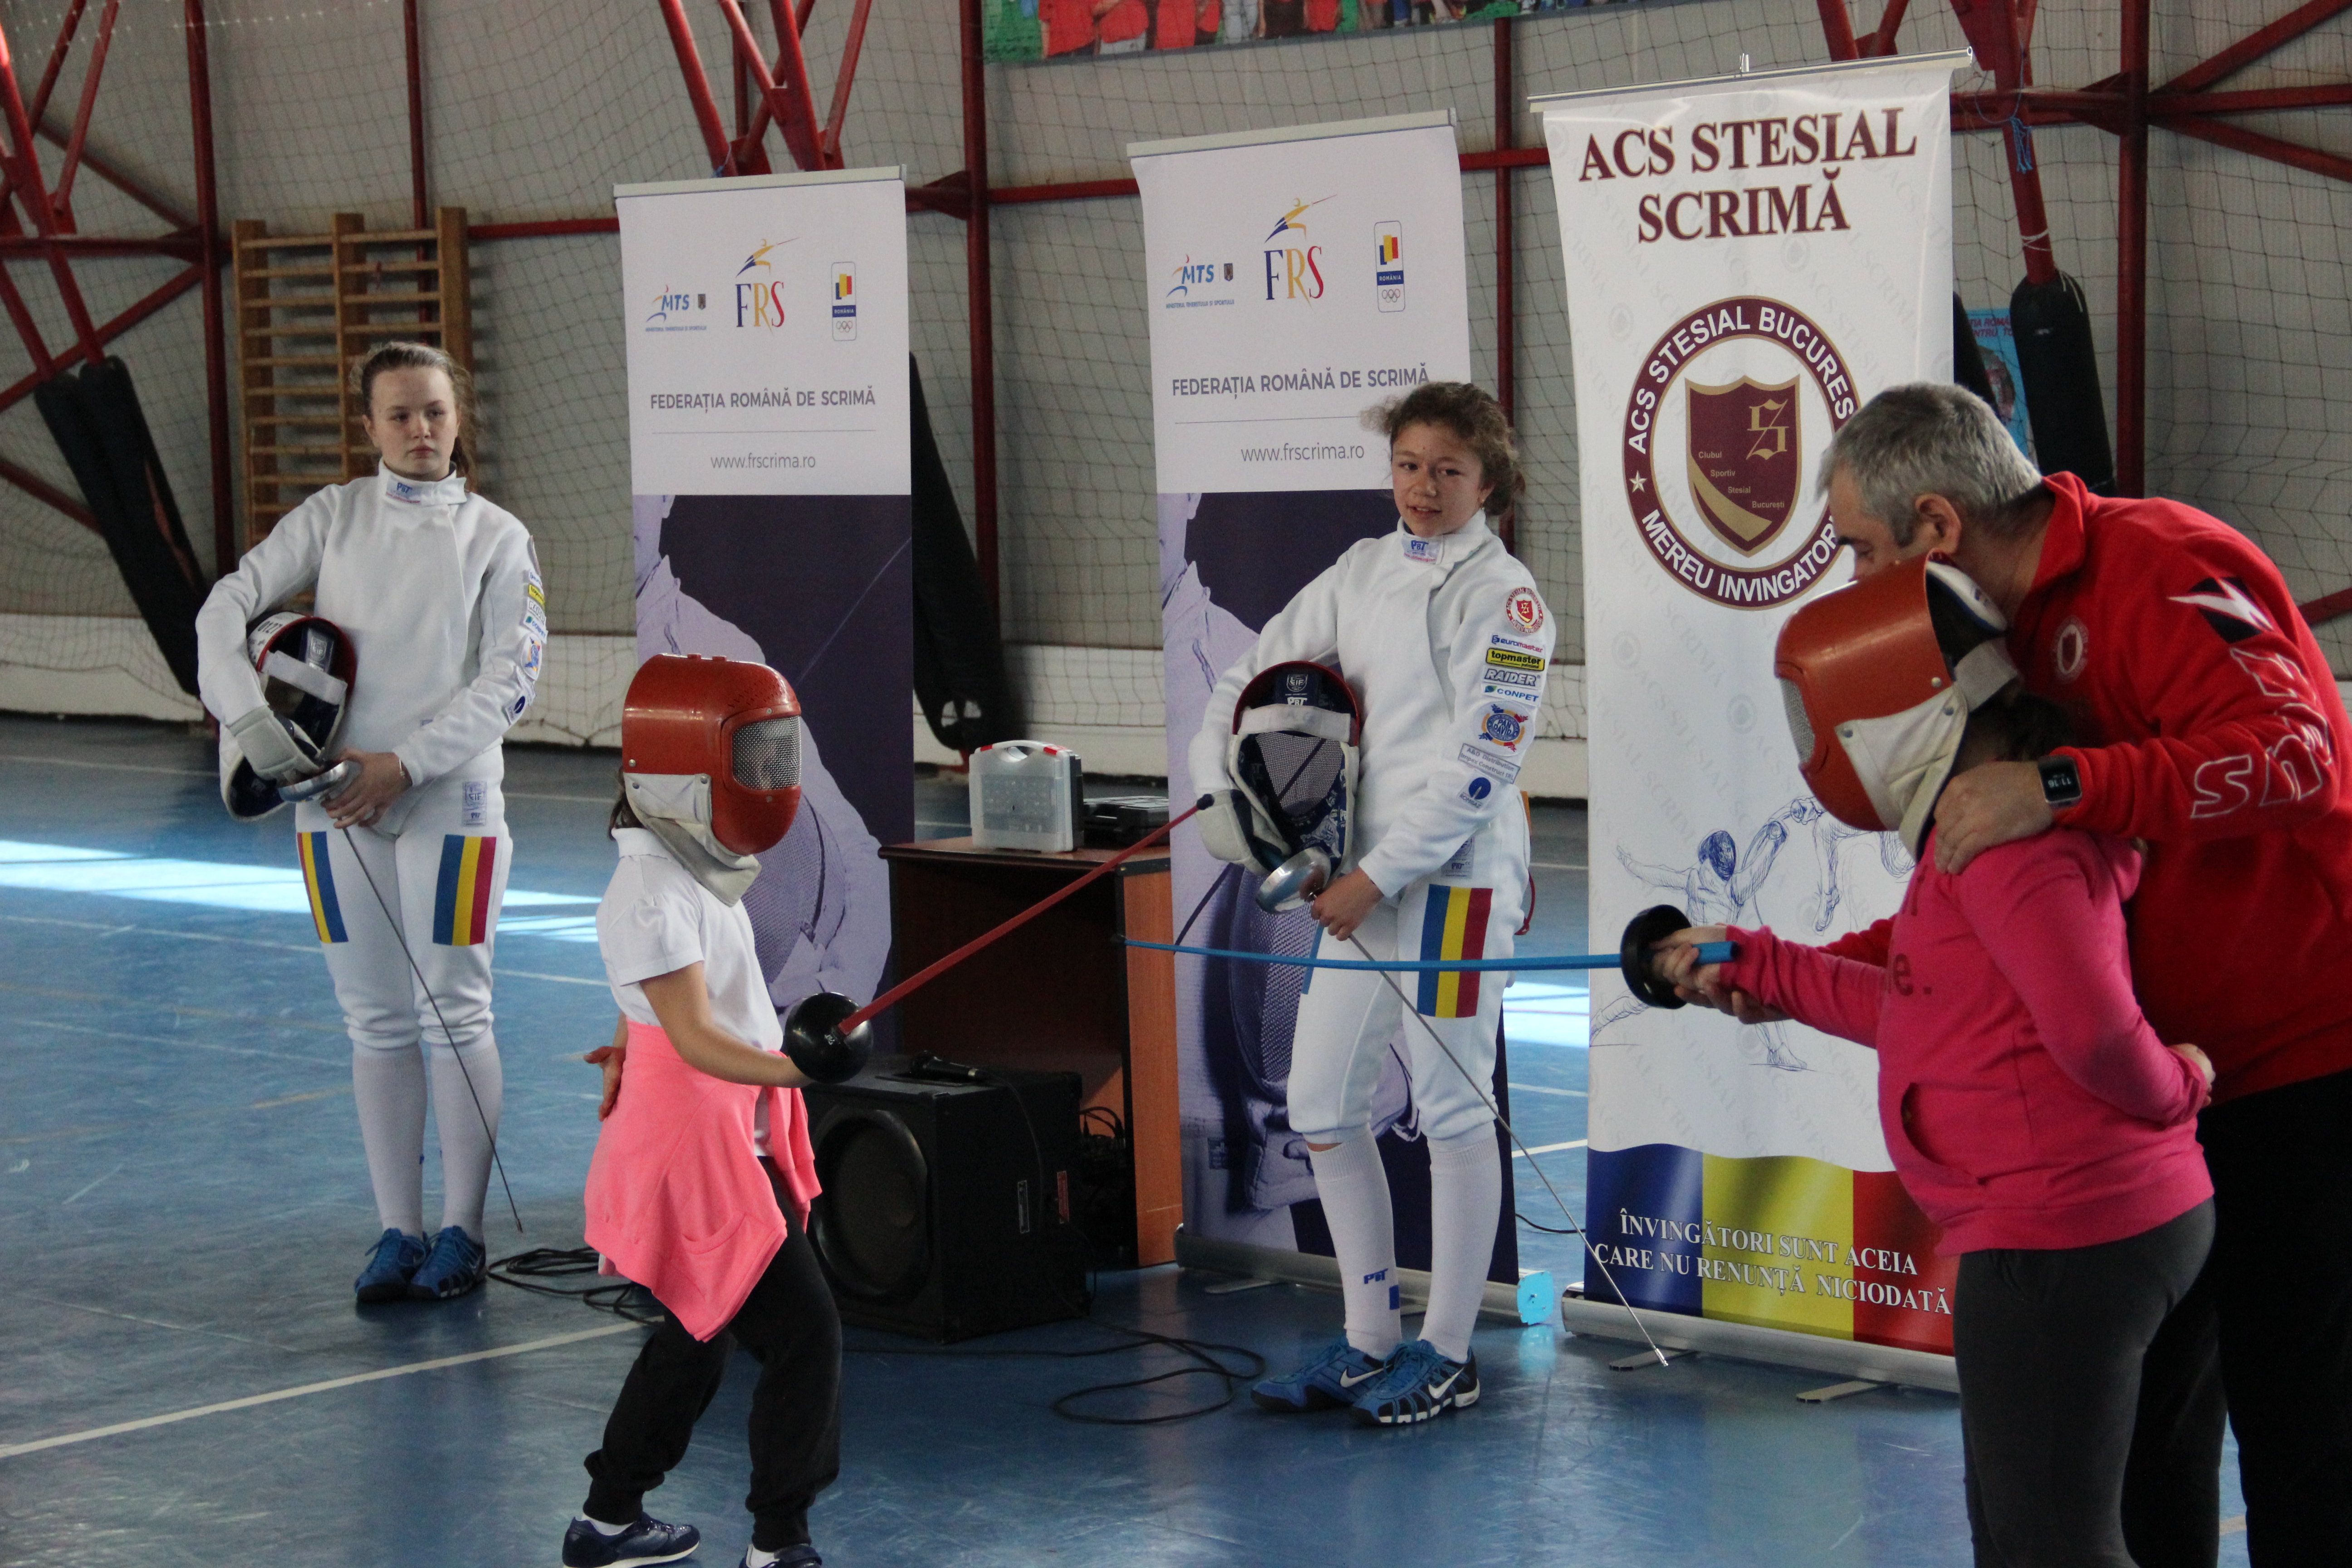 Zeci de elevi de la Școala Gimnazială „Mircea Sântimbreanu” au asistat la demonstrații de scrimă ale sportivilor de la ACS Stesial și ACS Balestra